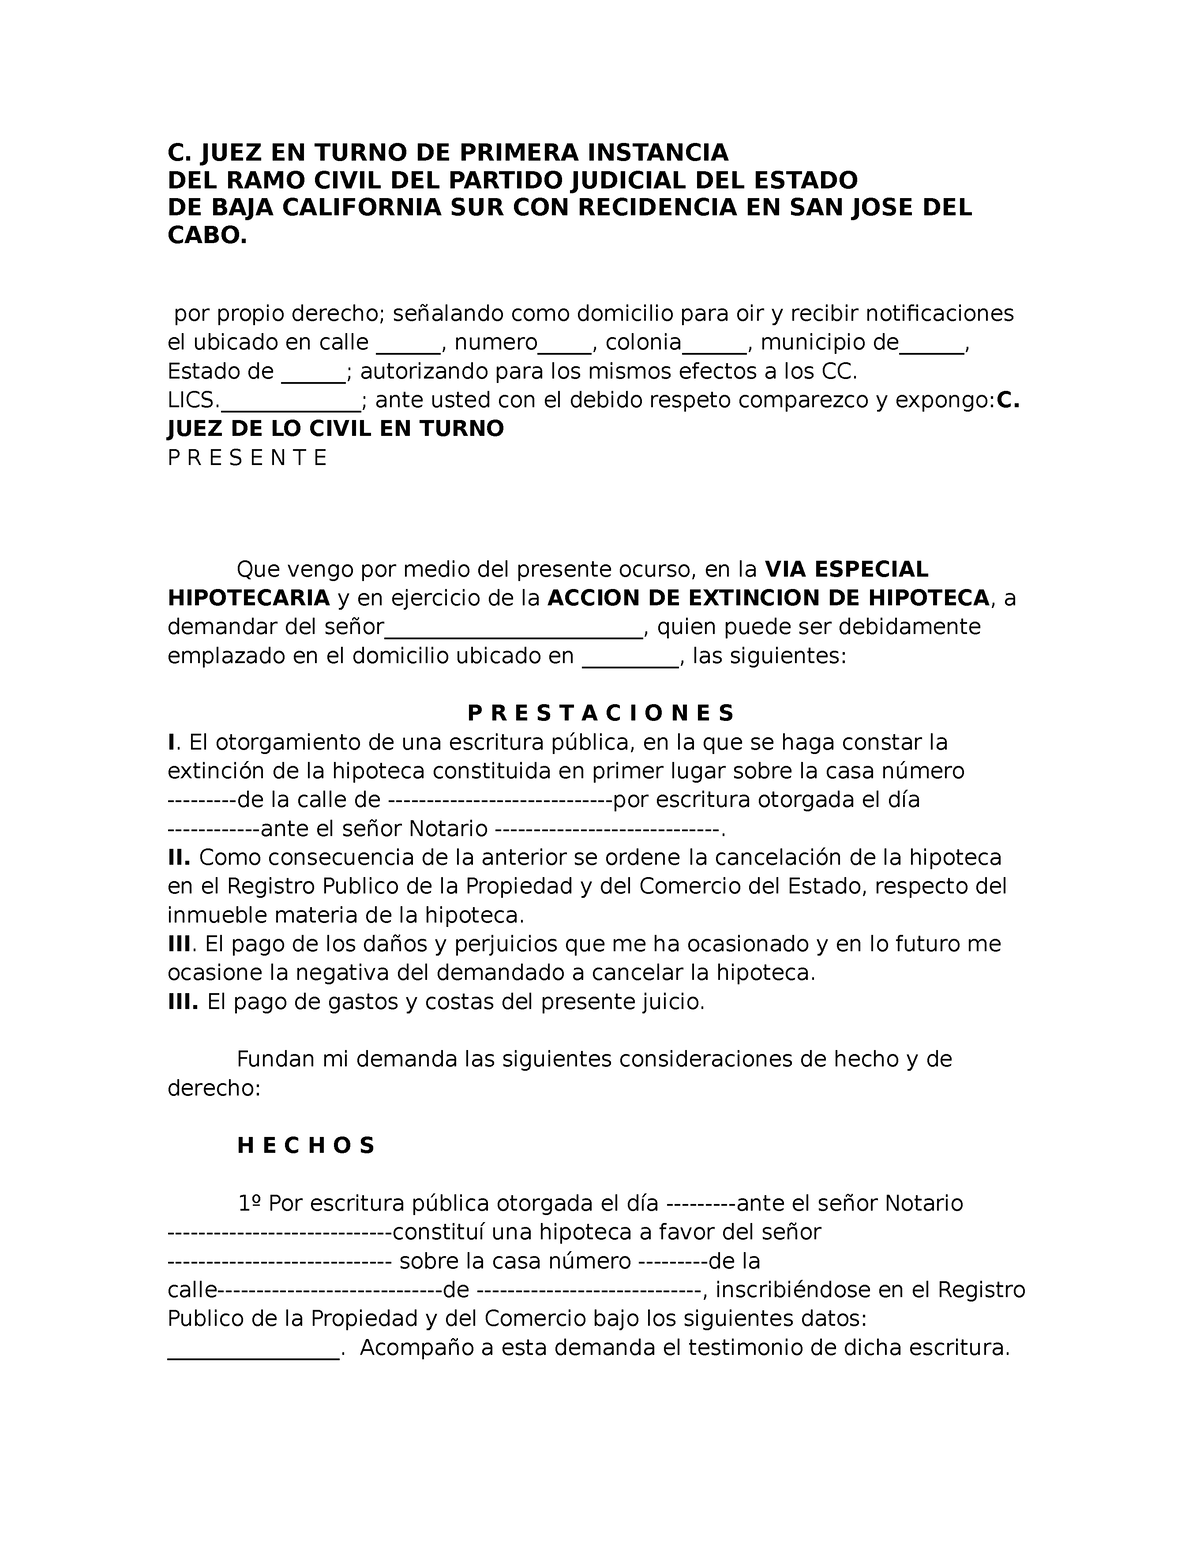 B. Modelo Demanda 2 - Controversia de ACCION DE EXTINCION DE HIPOTECA, por  Vía Especial Hipotecaria, - Studocu